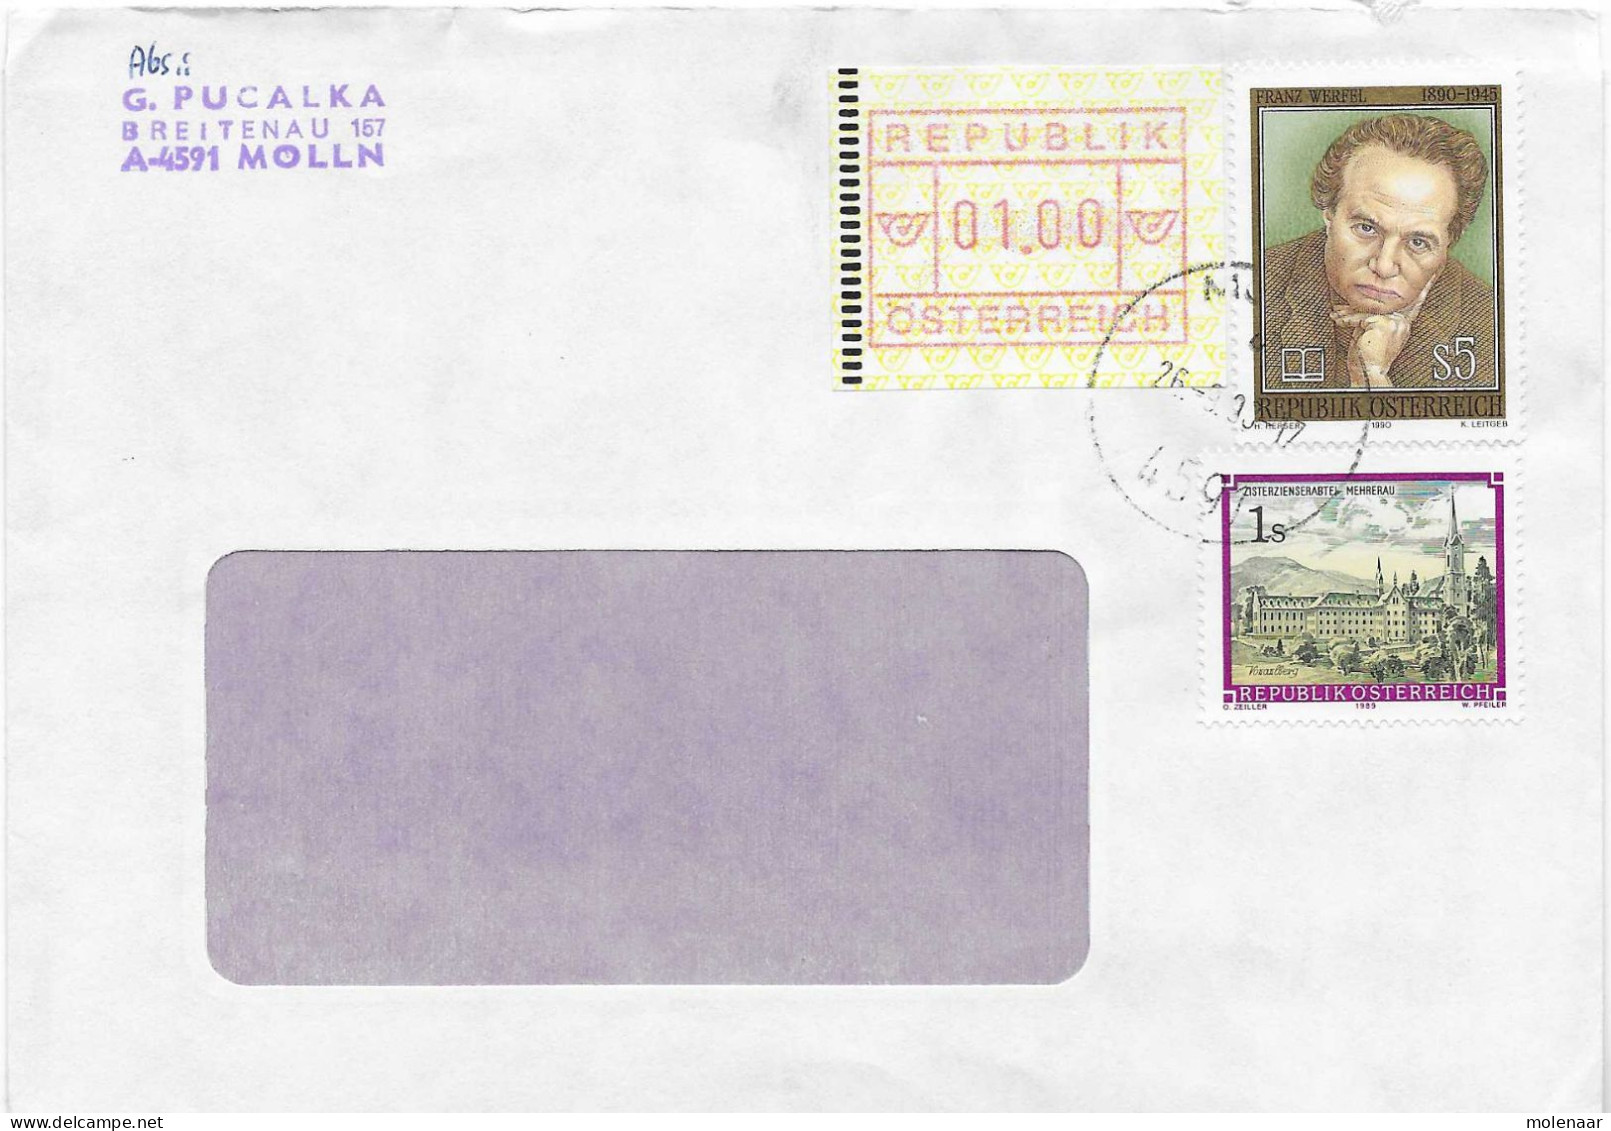 Postzegels > Europa > Oostenrijk > 1945-.... 2de Republiek > 1981-1990>brief Uit 1990 Met 3 Postzegels (17764) - Covers & Documents